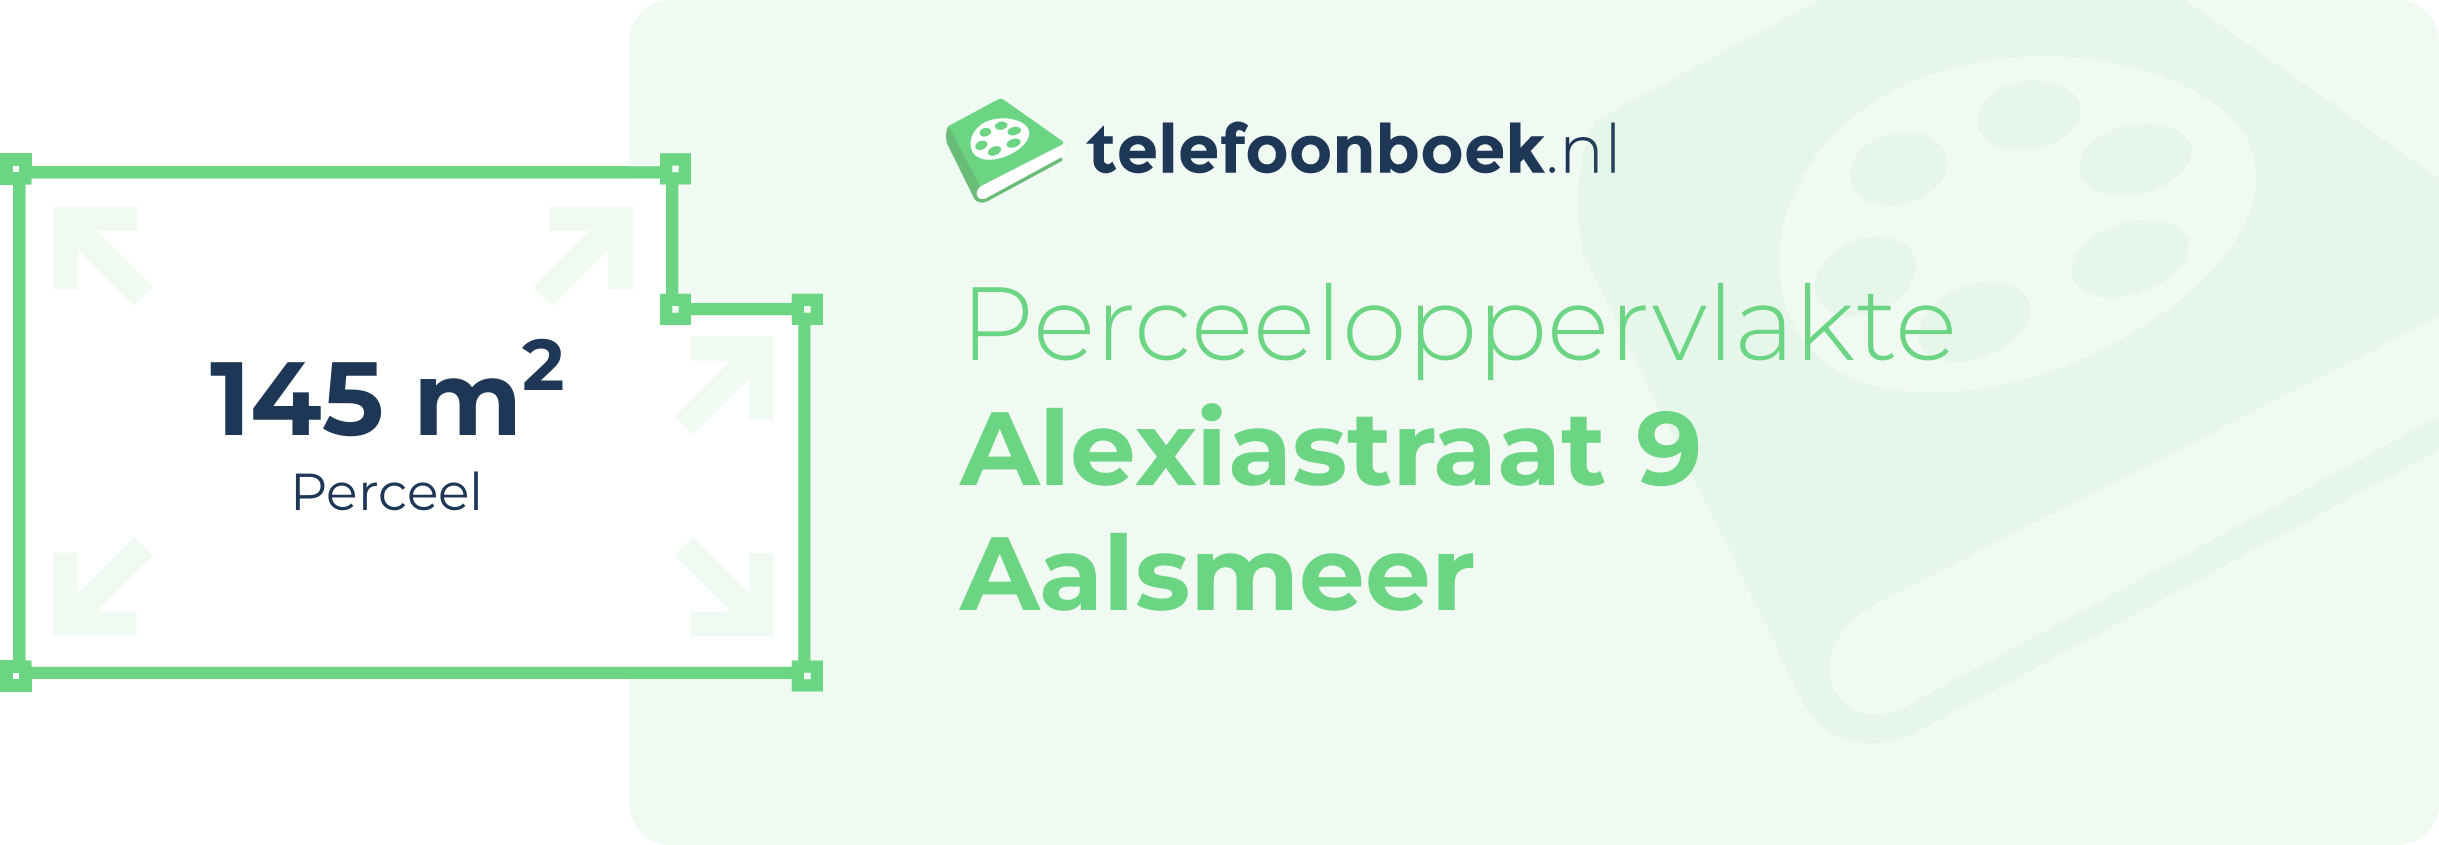 Perceeloppervlakte Alexiastraat 9 Aalsmeer